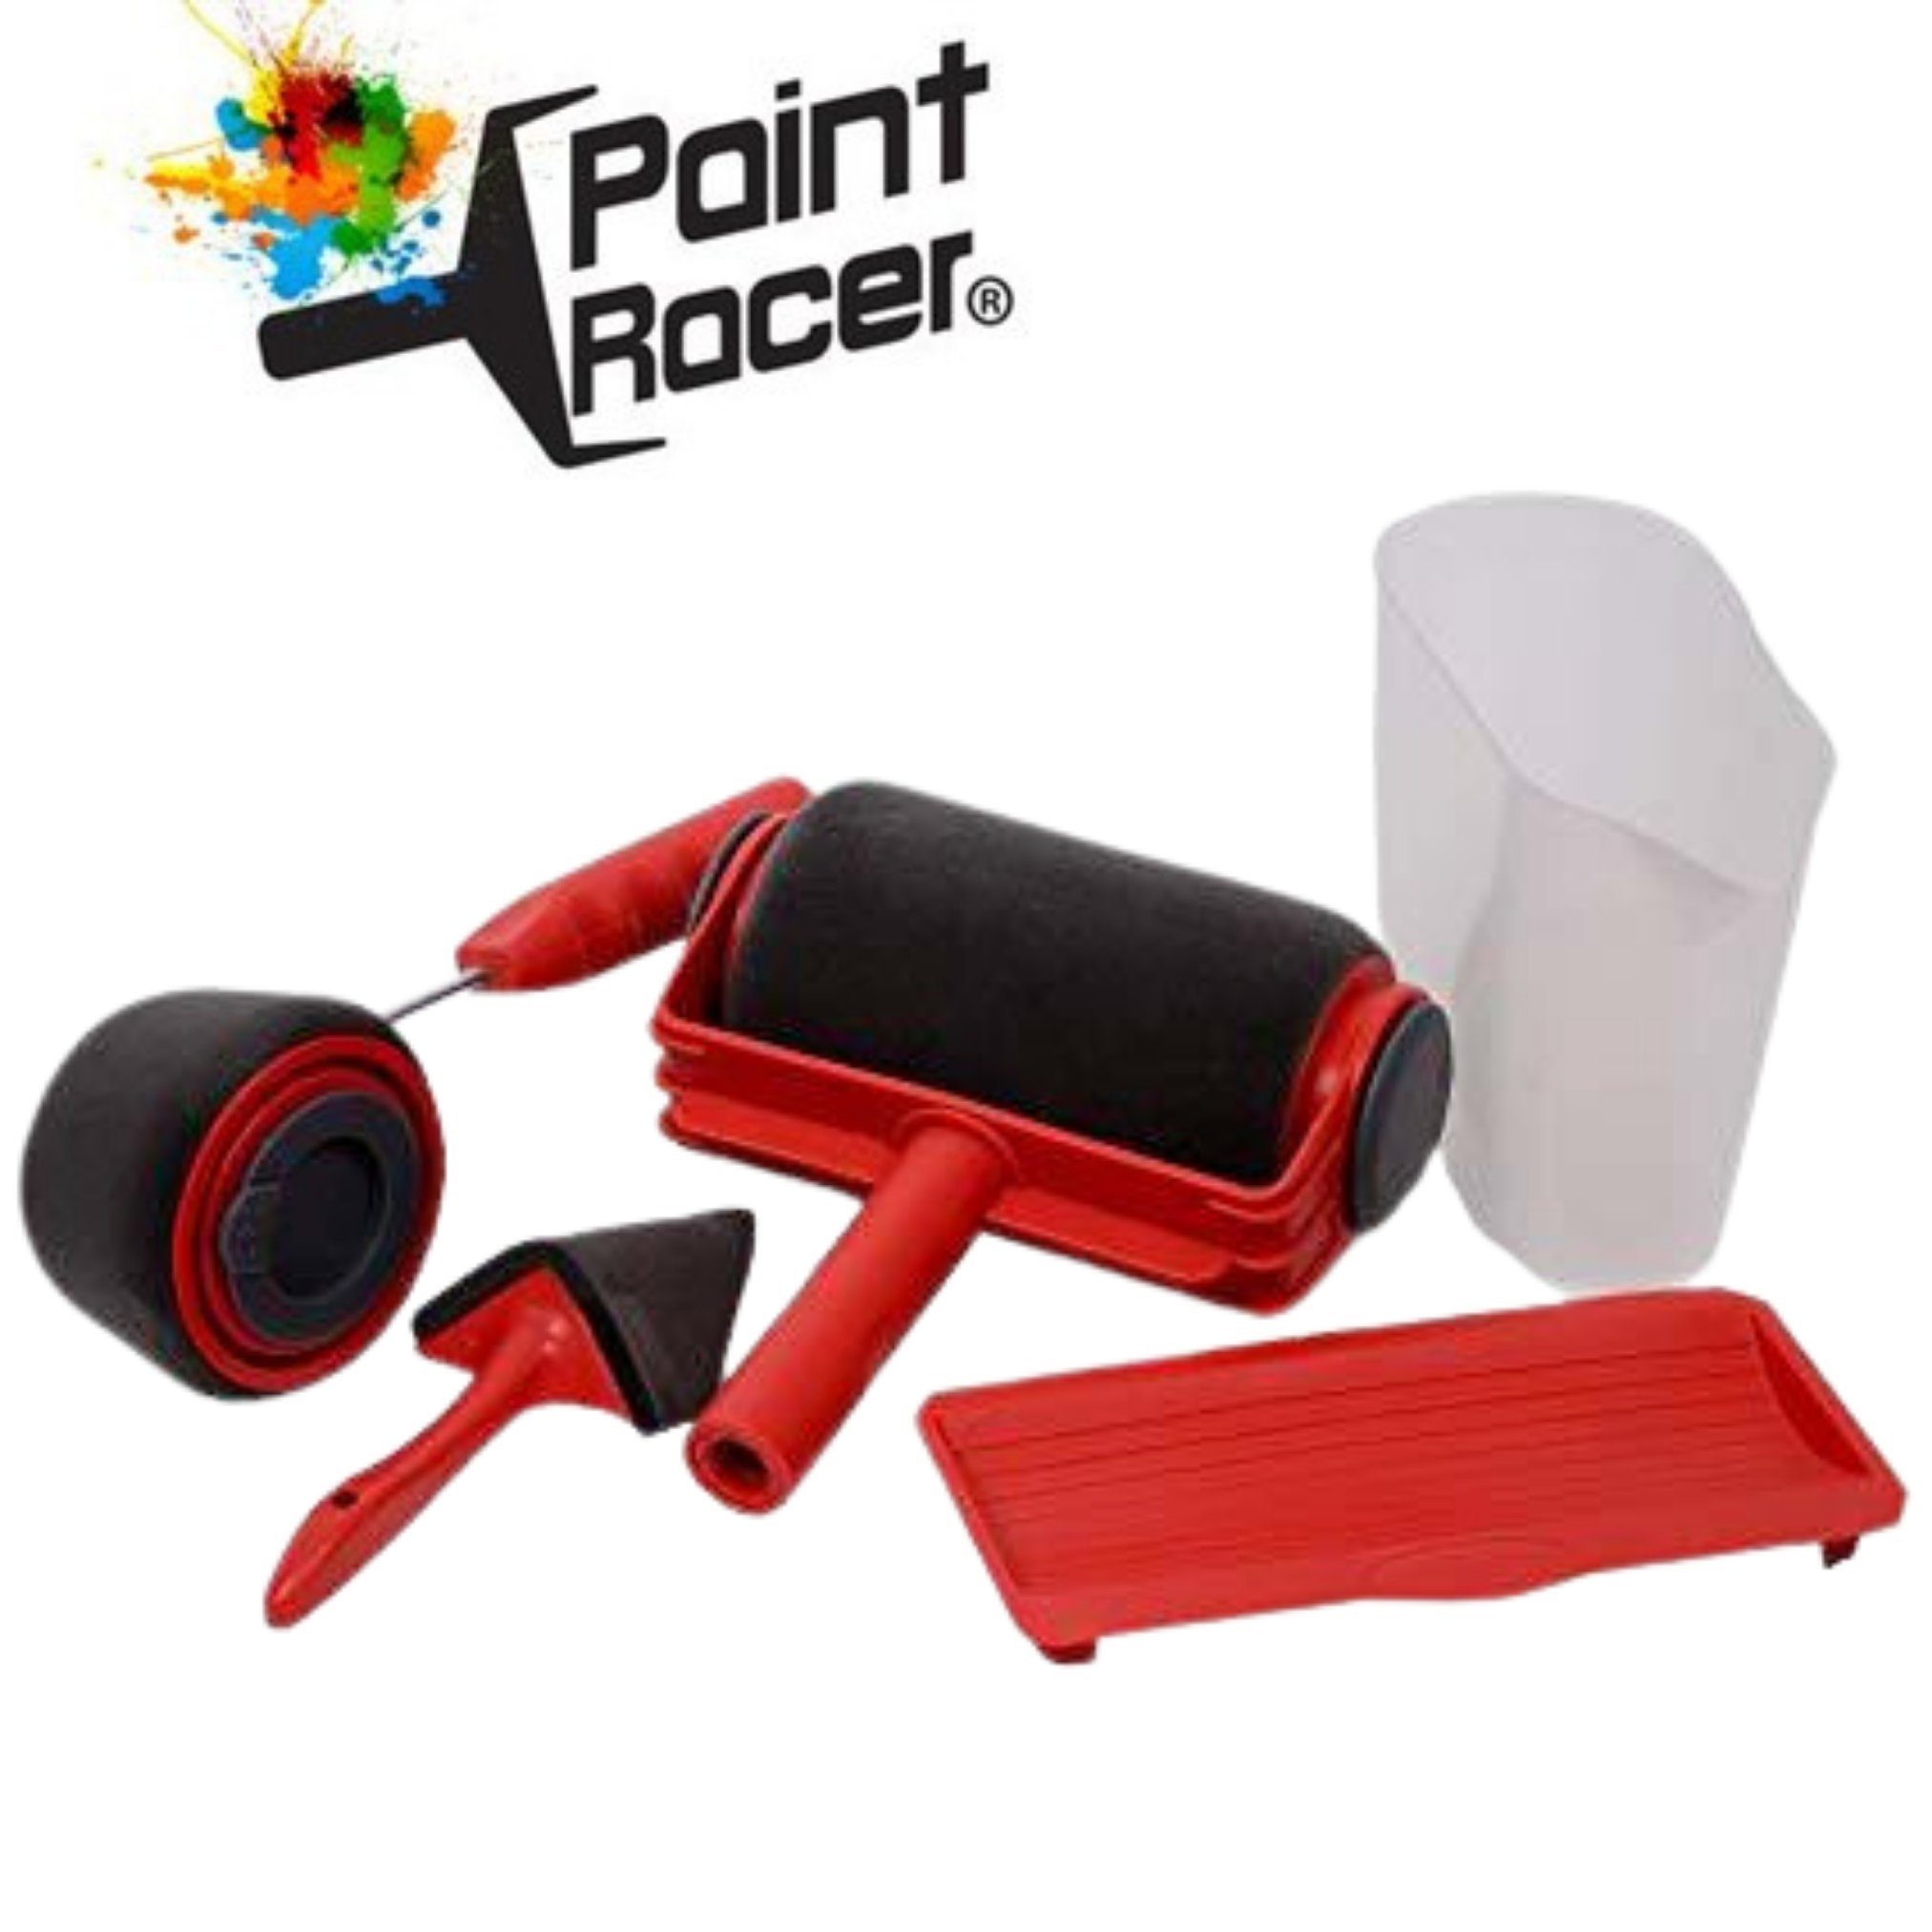 Best Direct® Farbroller Paint Racer® Set Farbroller (Set, Malerei, -St.5), Farbroller für befüllbarer Wand, Multifunktion Tank, Decke Büro, mit